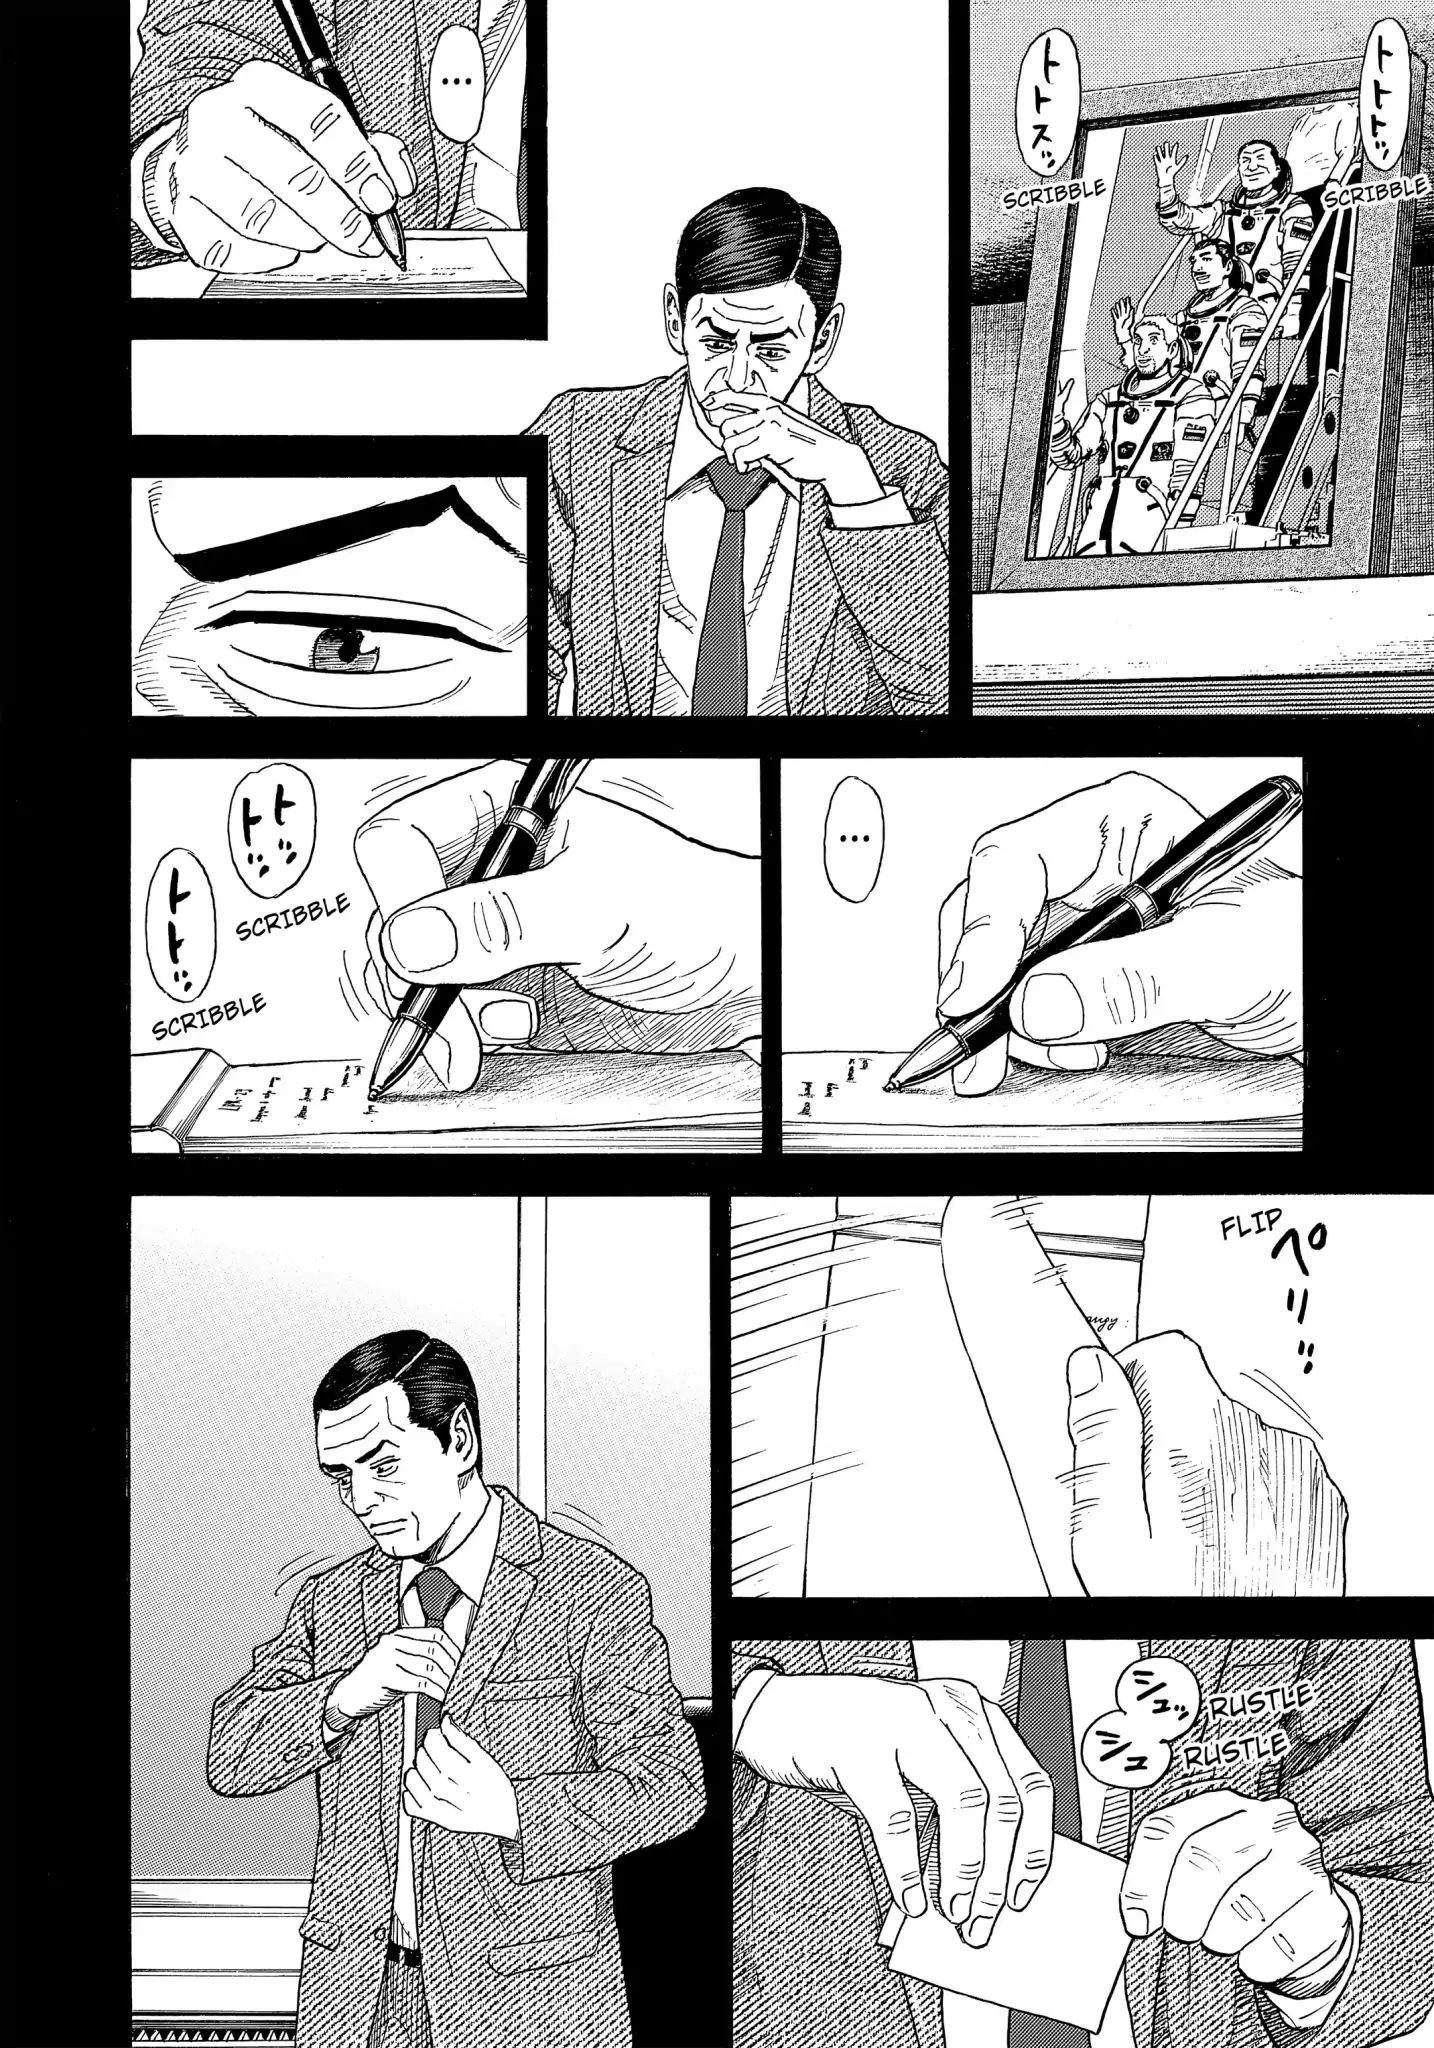 Uchuu Kyoudai chapter 334 page 3